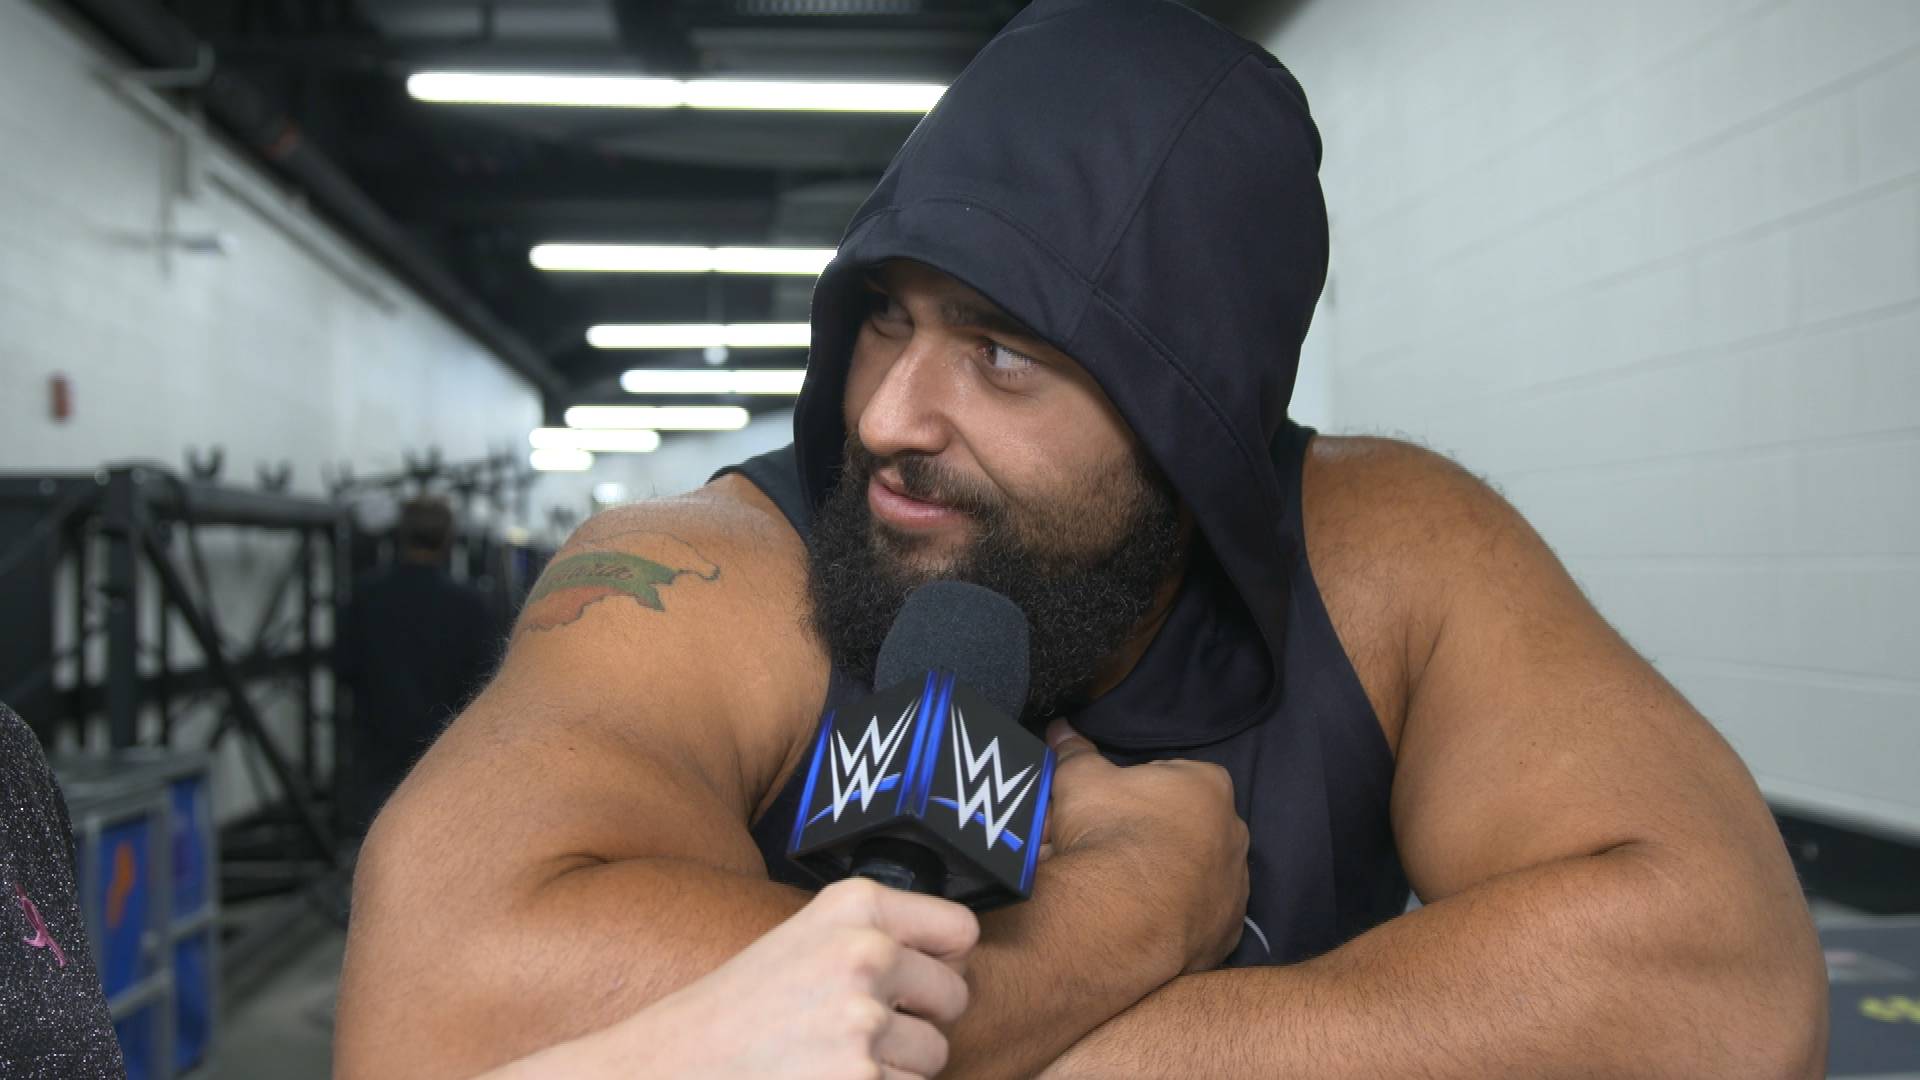 Русев е готов да разбие главата на някого: WWE